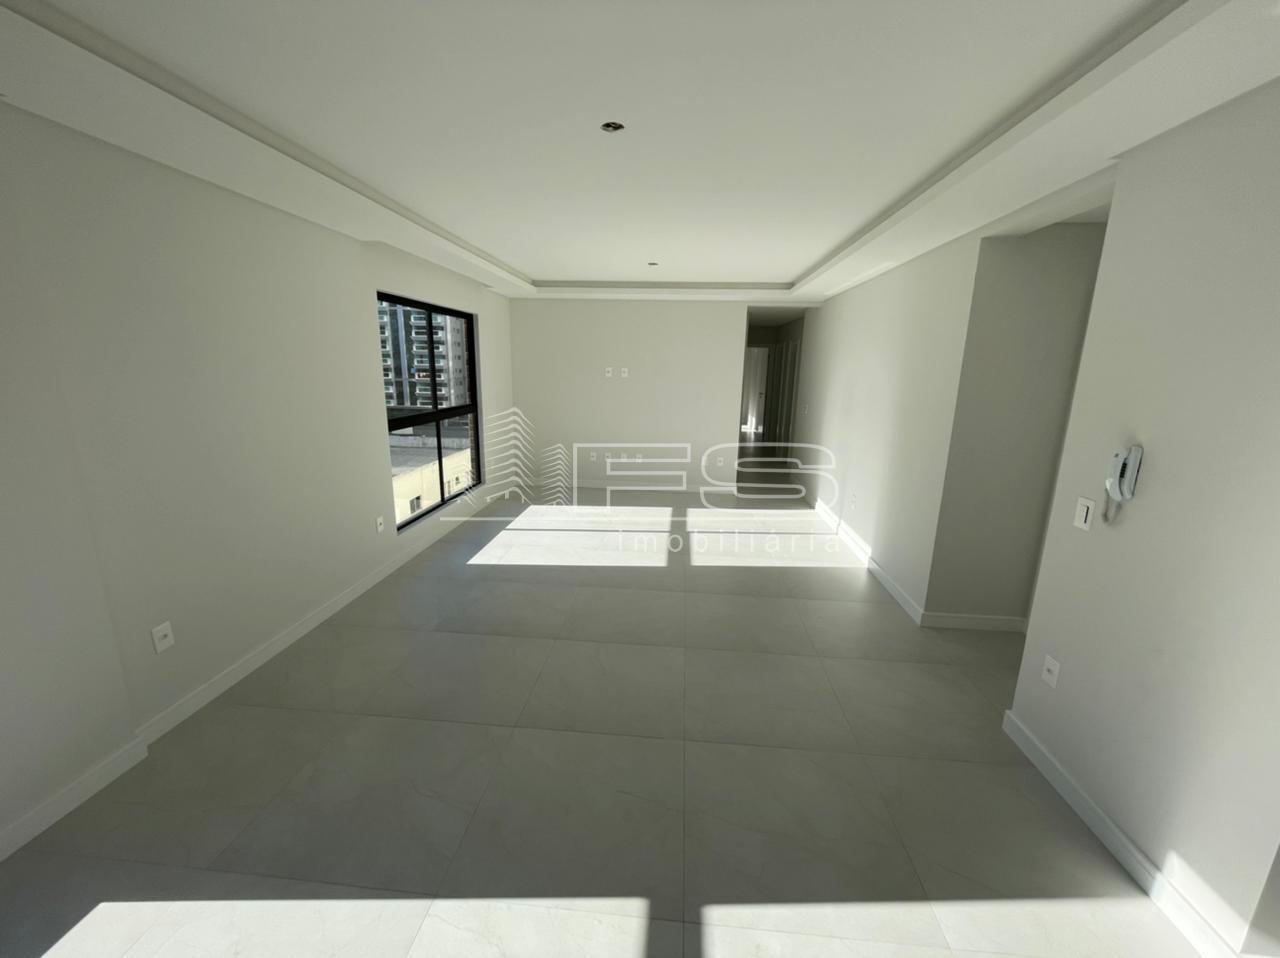 Apartamento com 3 Dormitórios à venda, 125 m² por R$ 934.819,00